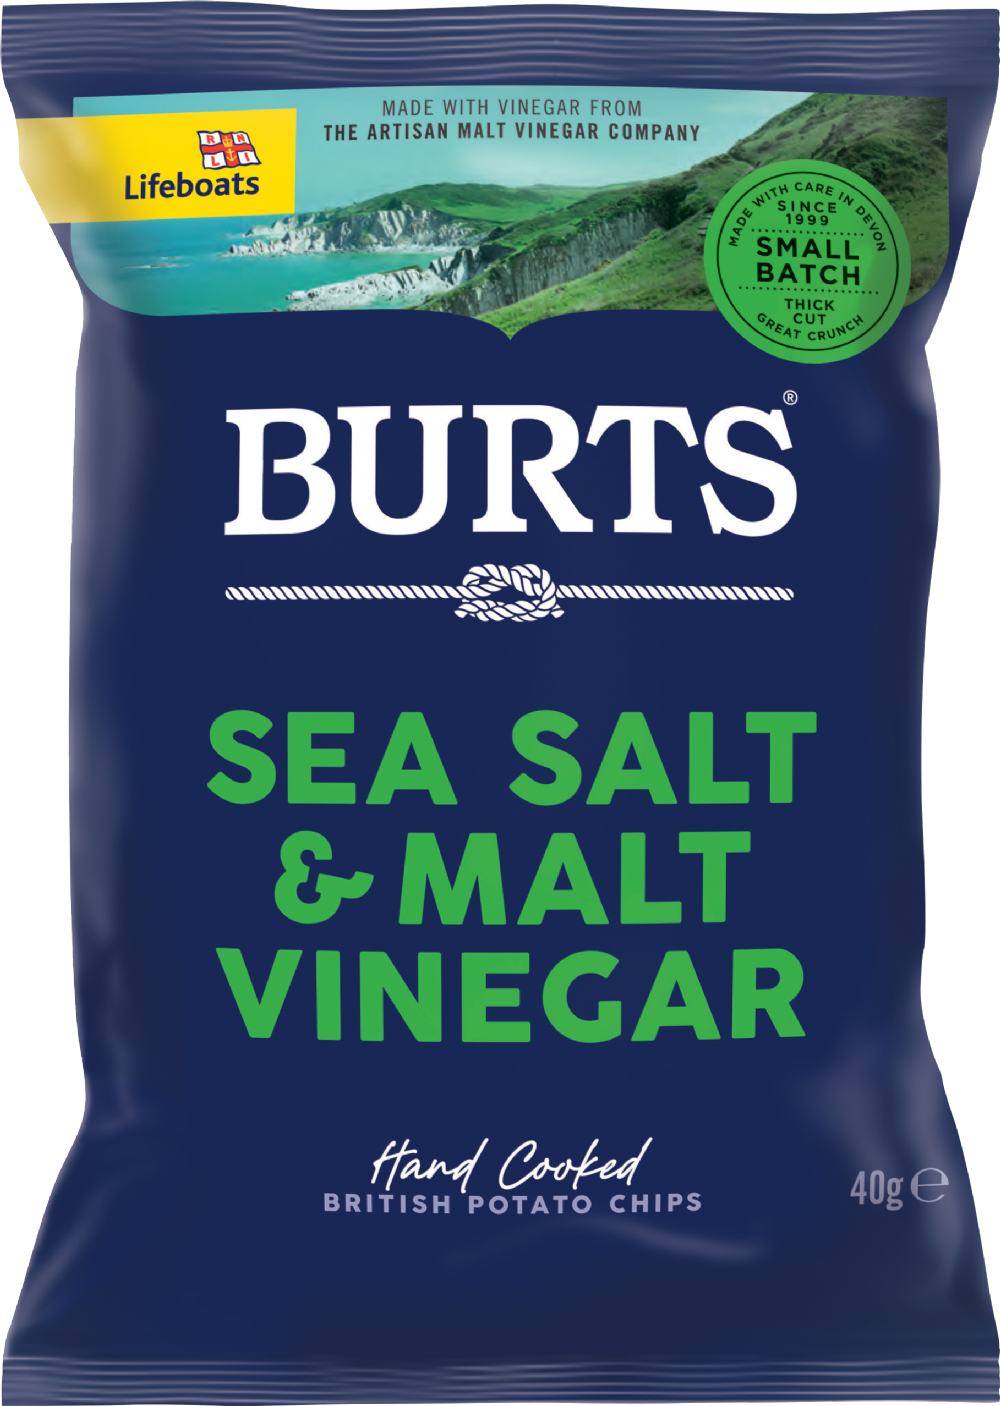 BURTS Potato Chips - Sea Salt & Malt Vinegar 40g